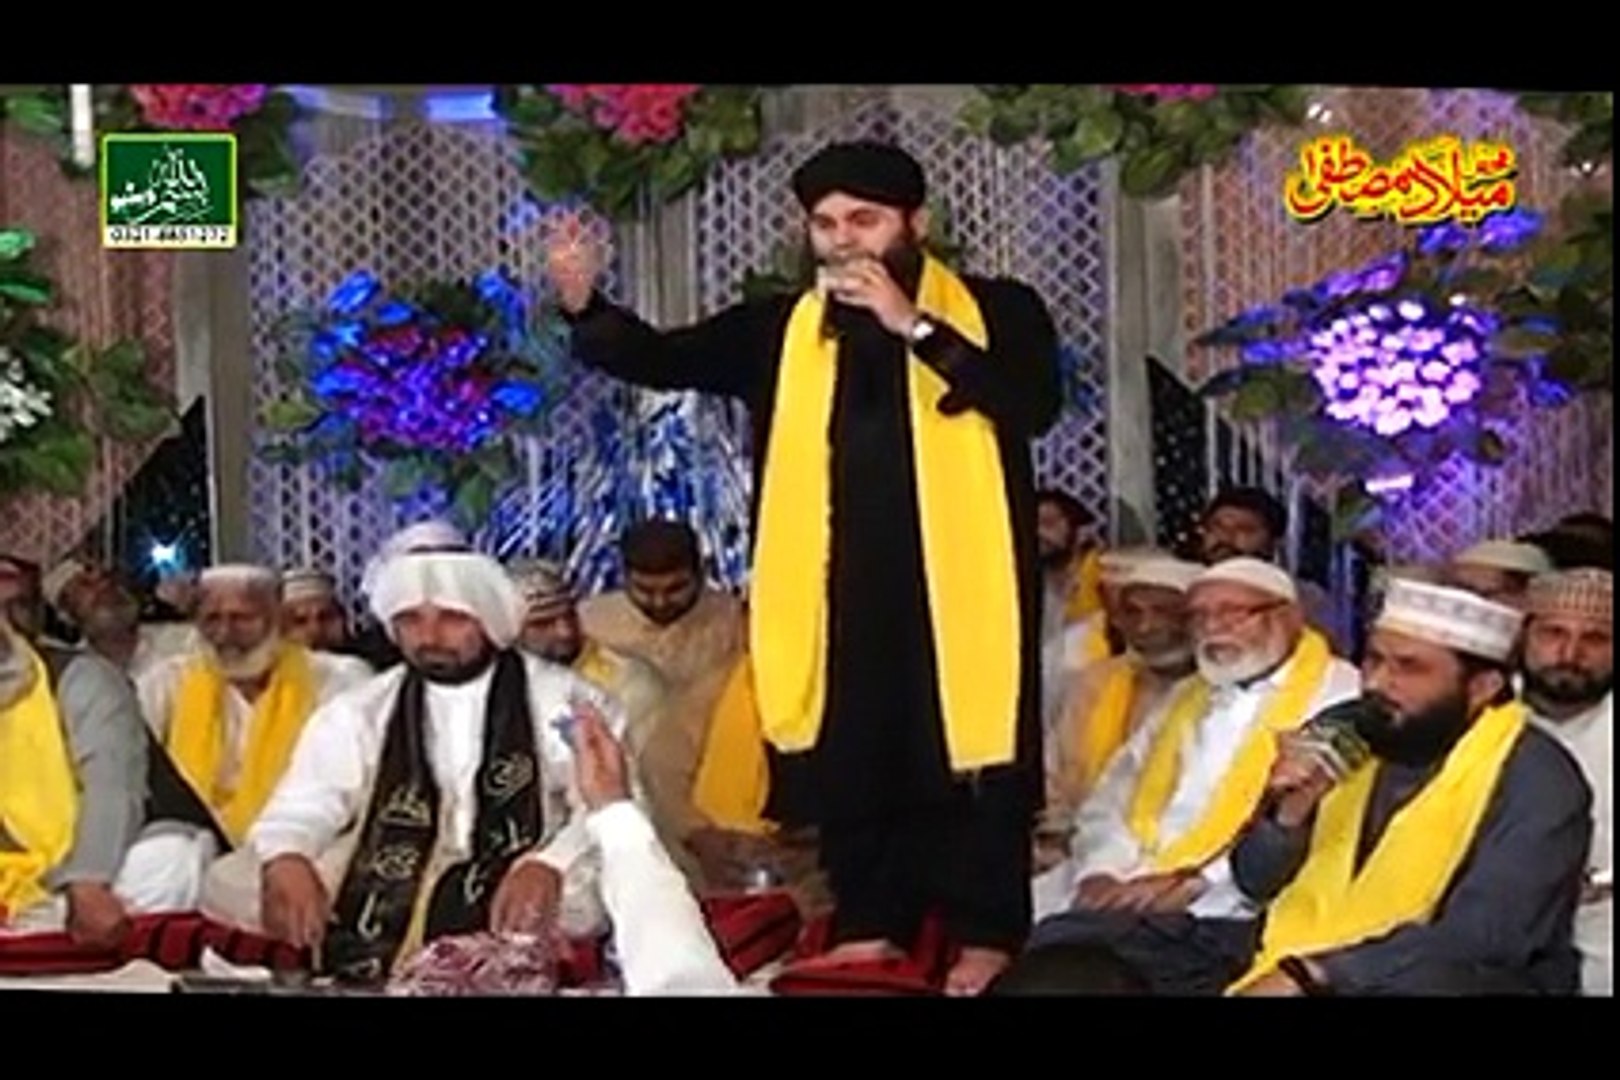 Ishq e Ahmed Naat - Hafiz Ahmed Raza Qadri - New Video Naat [2015] Naat Online - Mehfil e Naat